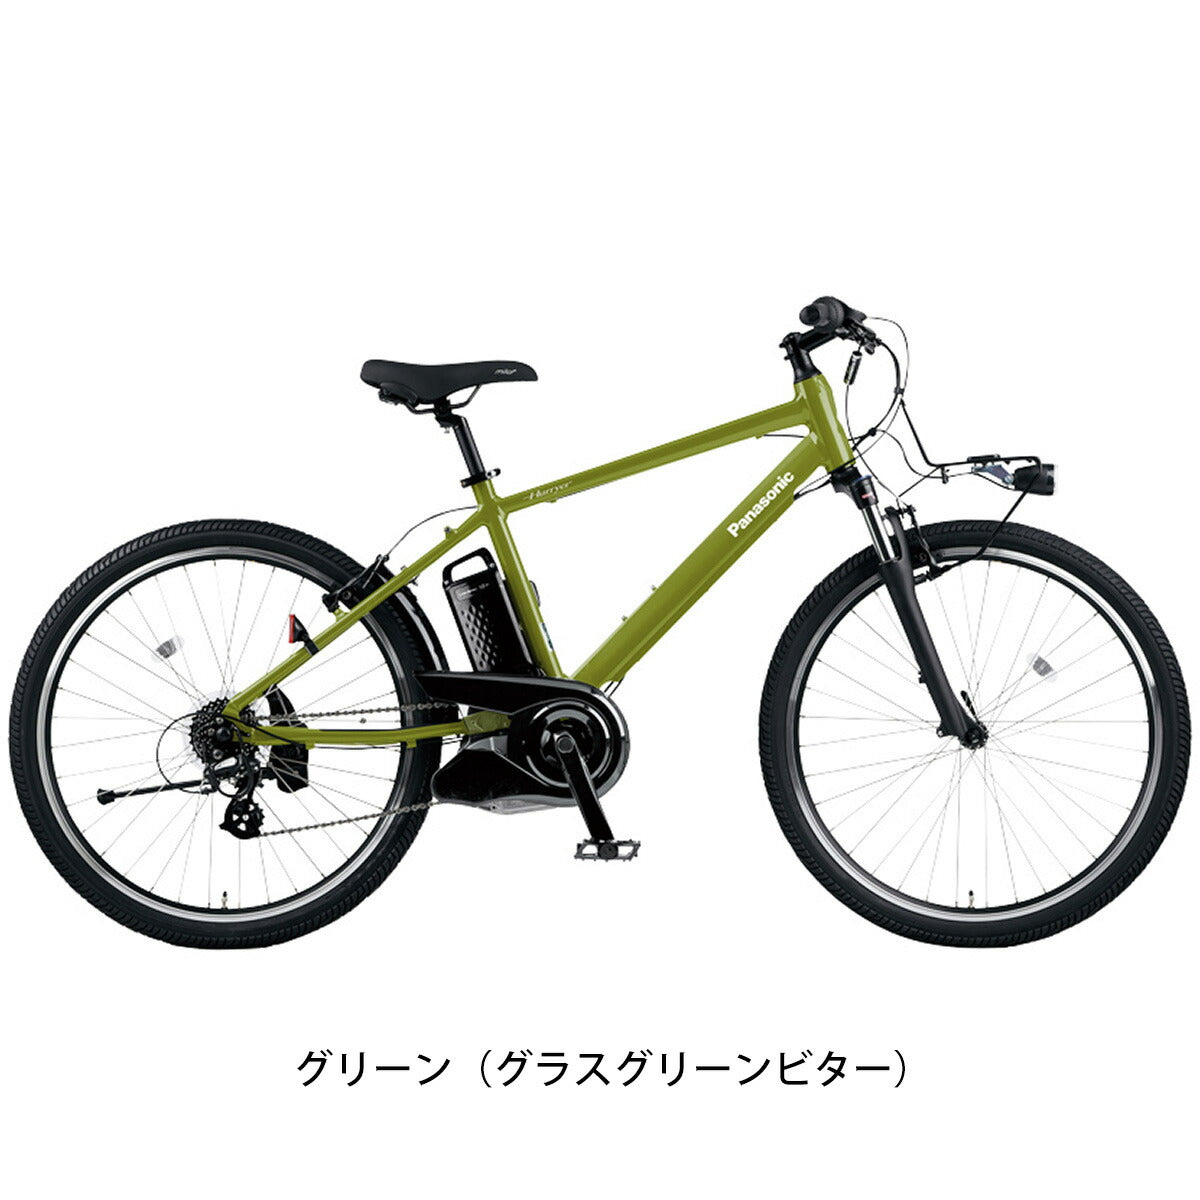 パナソニック Eバイク スポーツ 電動自転車 電動アシスト Panasonic 7段変速  BE-ELH642